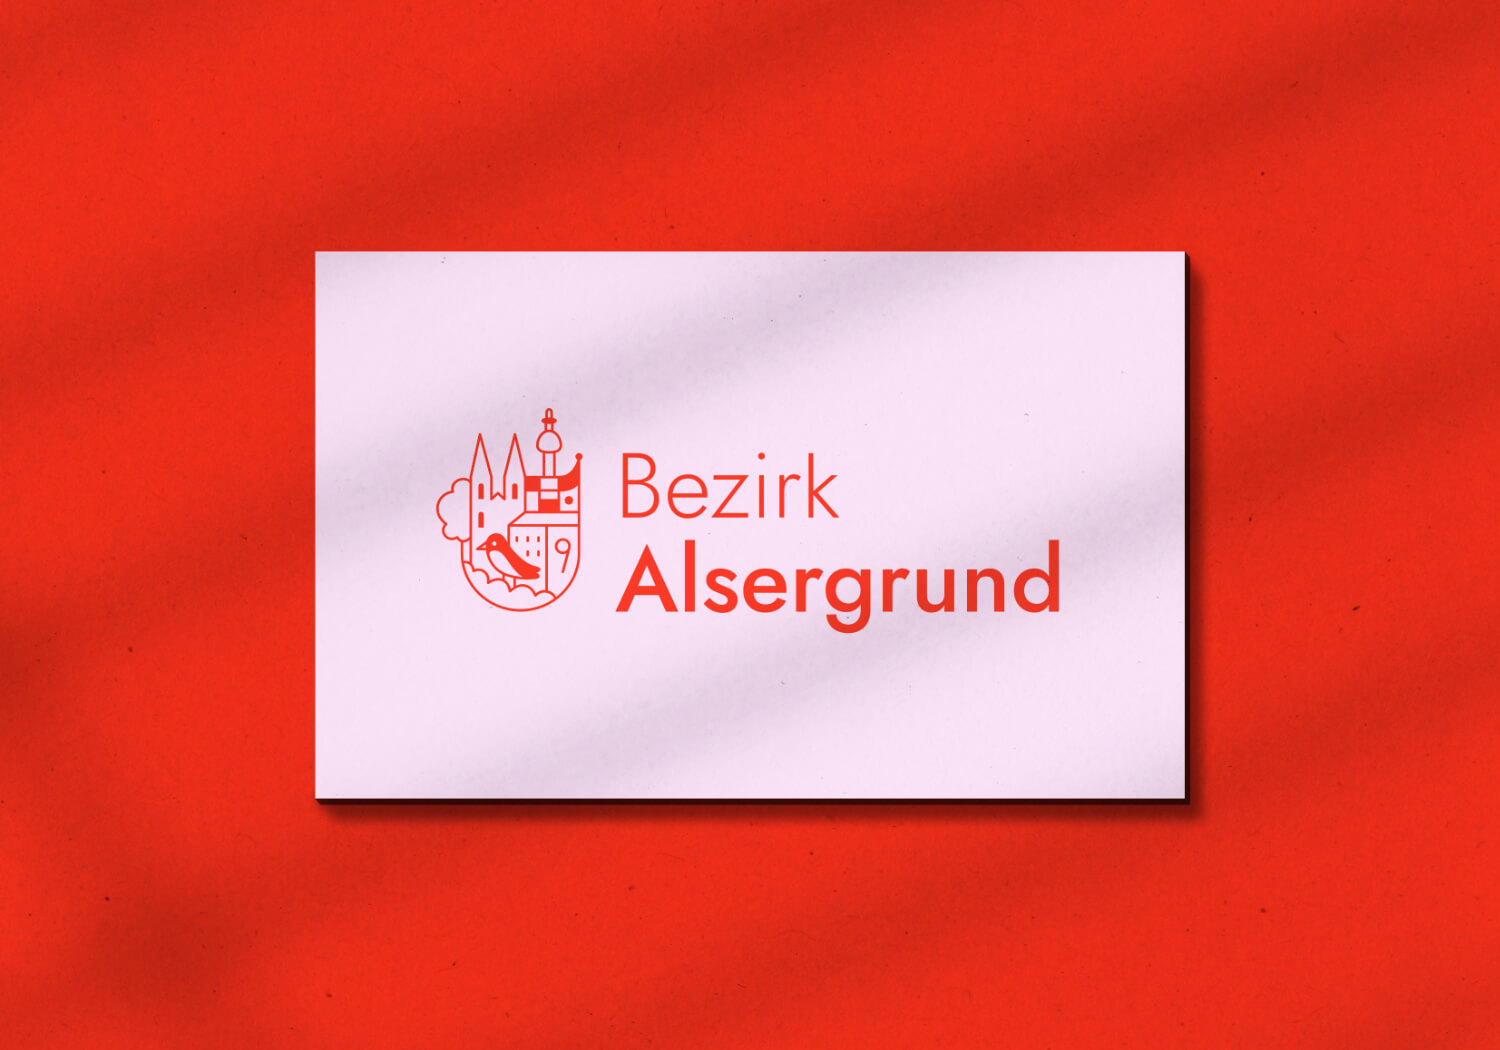 Petra-Hollaender-Branding-Bezirkvorstehung-Alsergrund-Wien-Corporate-Design-Illustration-01